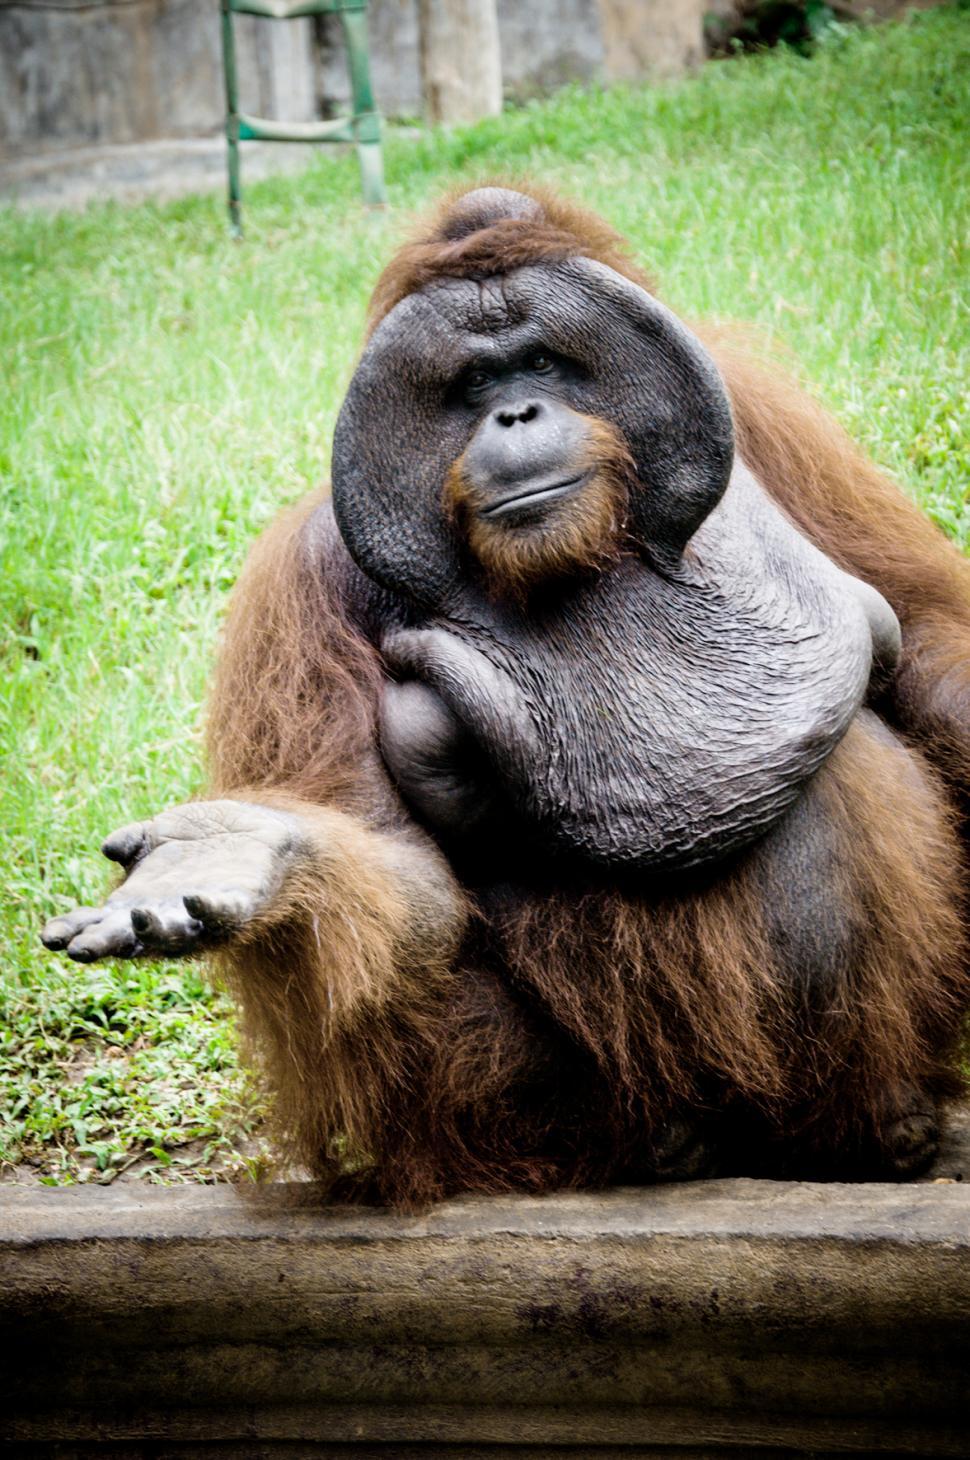 Free Image of Orangutan monkey 